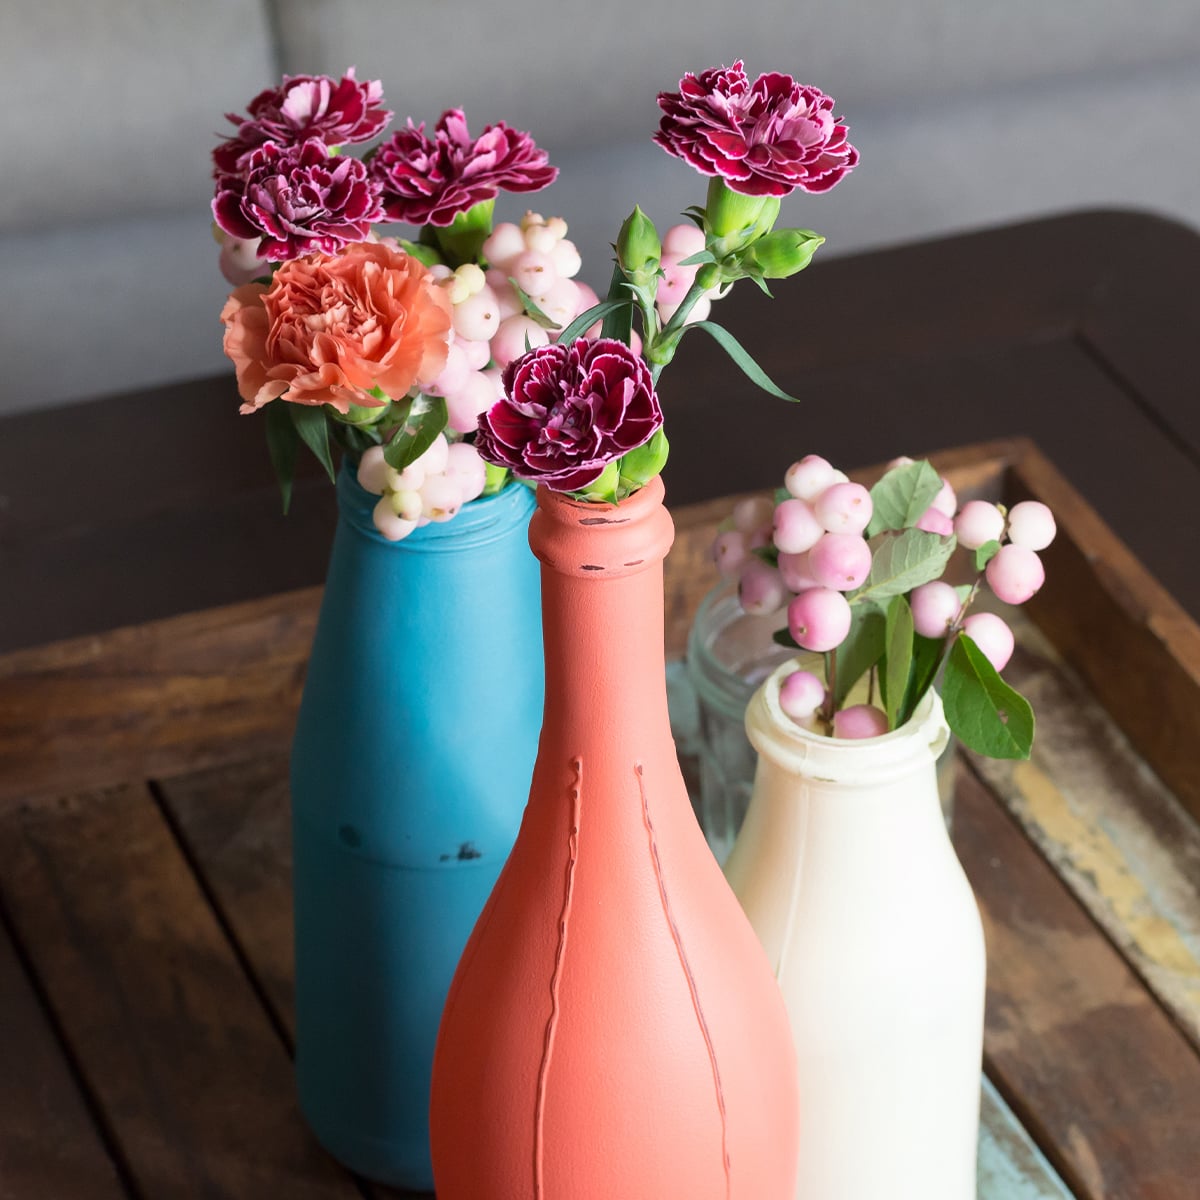 Mit Kreidefarbe bemalte Vasen aus alten Glasflaschen im Landhaus-Stil auf Holztisch